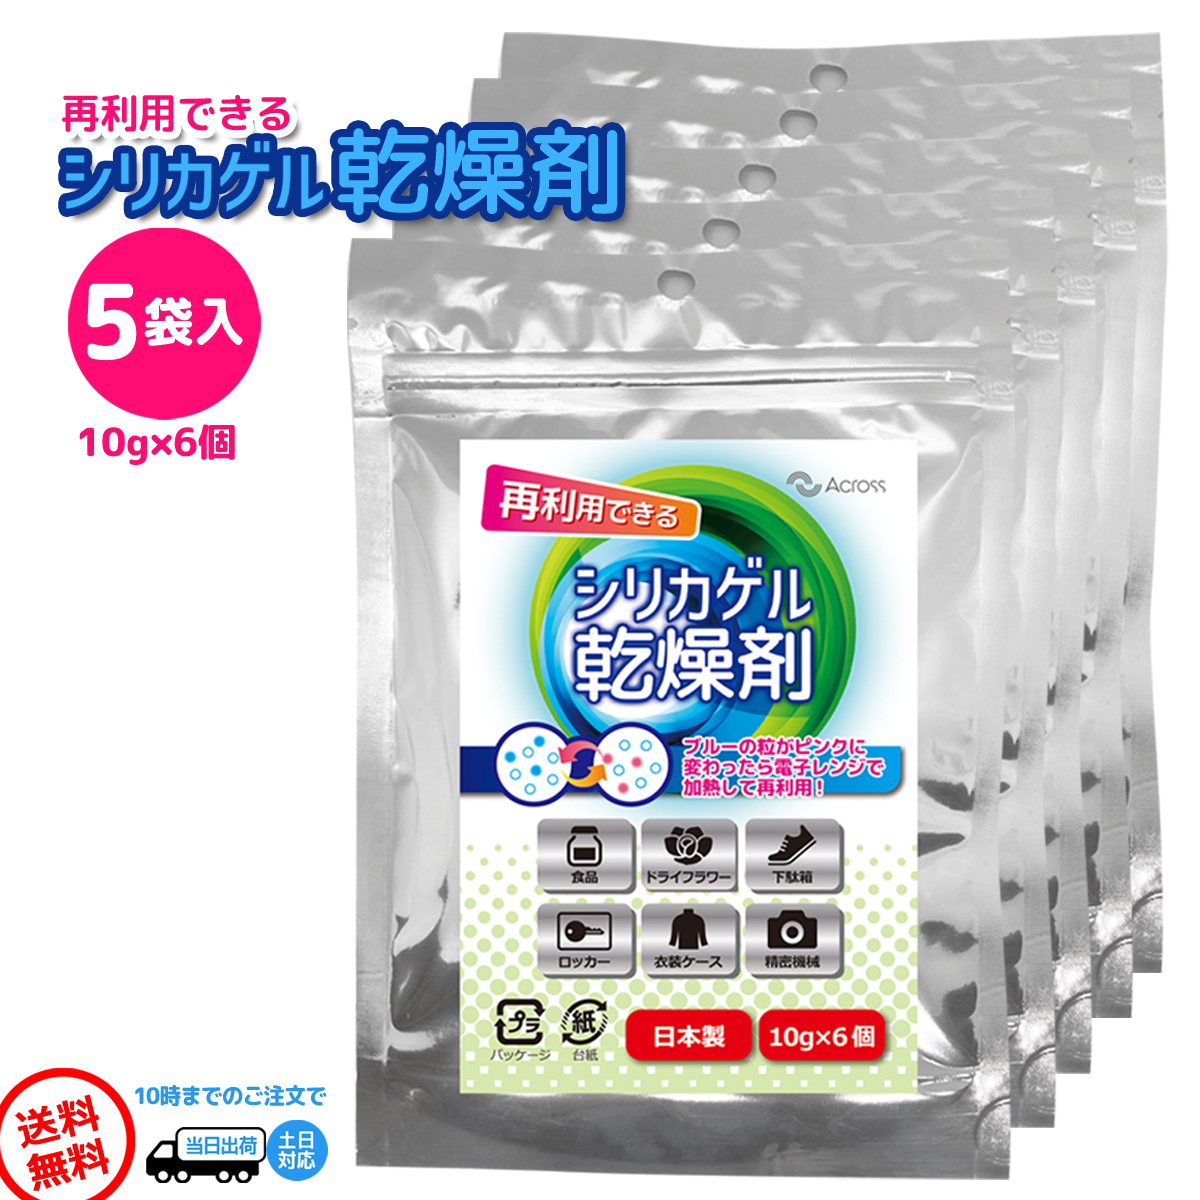 シリカゲル 乾燥剤 除湿剤 再利用可能 食品 日本茶 最も 紅茶 カメラ 大量 レンジ 業務用 10g×6個入り ドライフラワー 5袋 保存 小分け